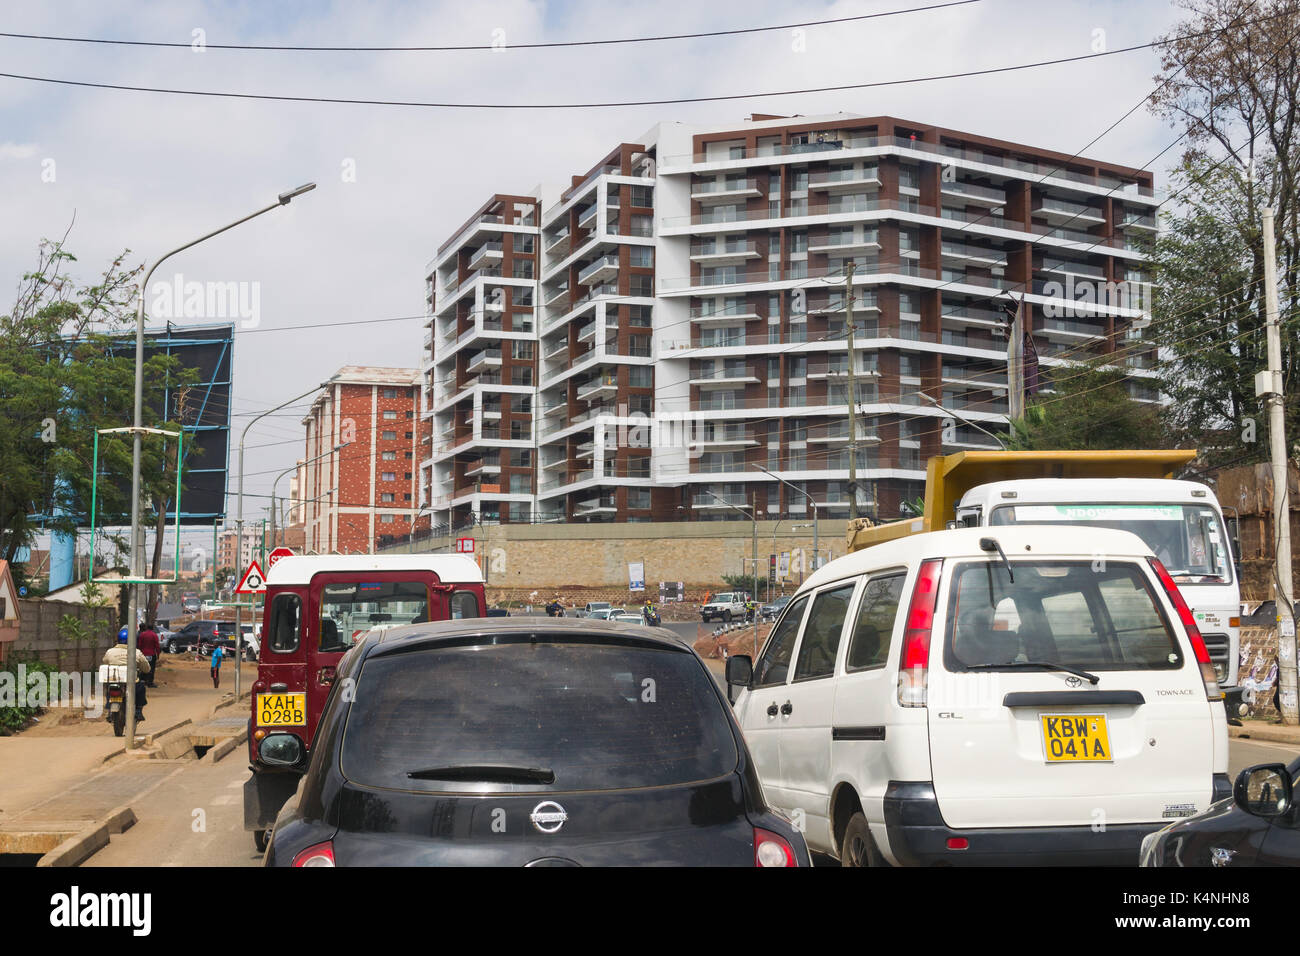 La congestion du trafic de véhicules lourds sur la route Likoni durant la journée, Nairobi, Kenya Banque D'Images